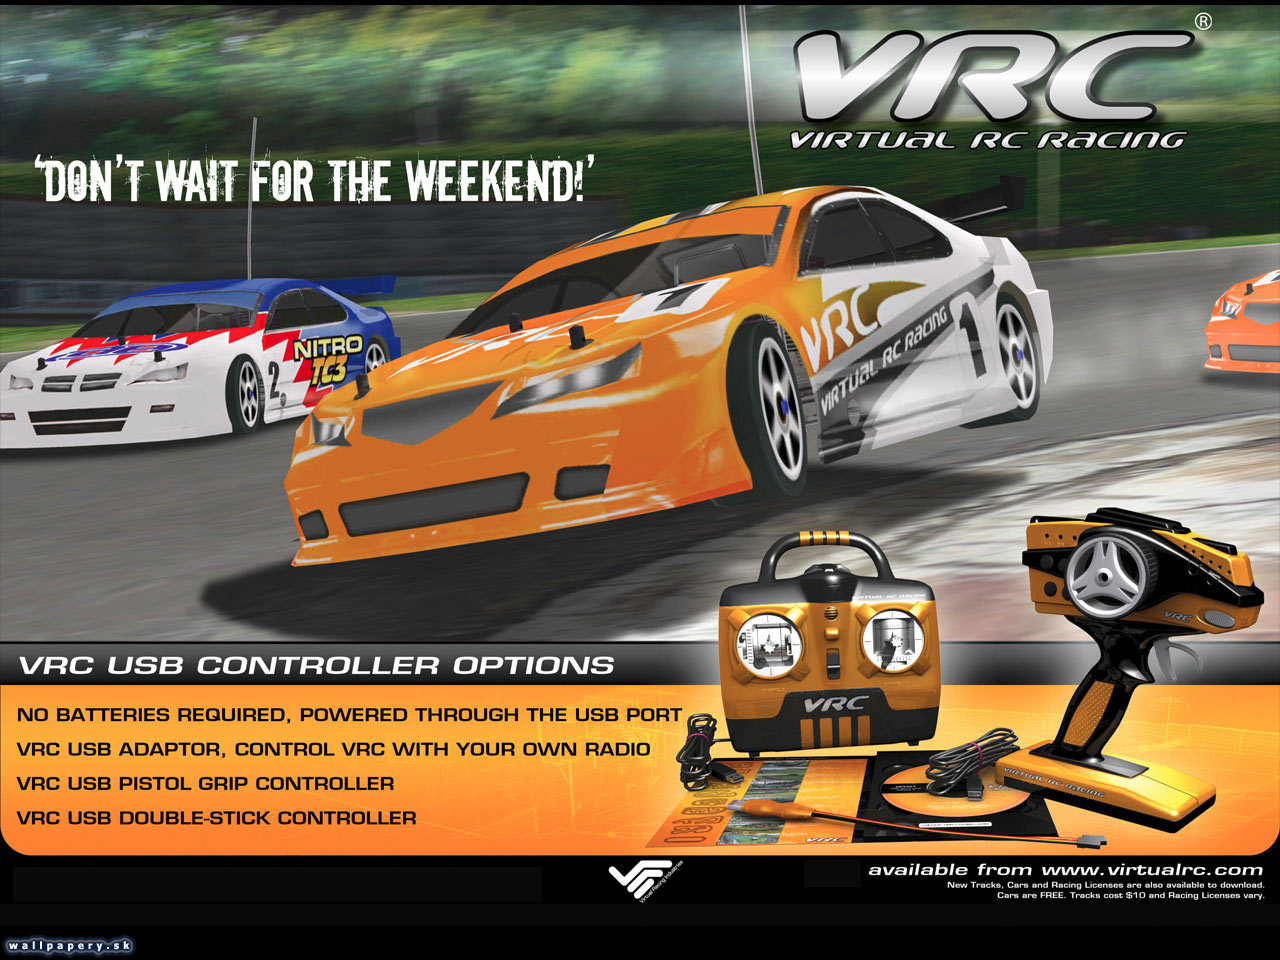 Virtual RC Racing - wallpaper 2